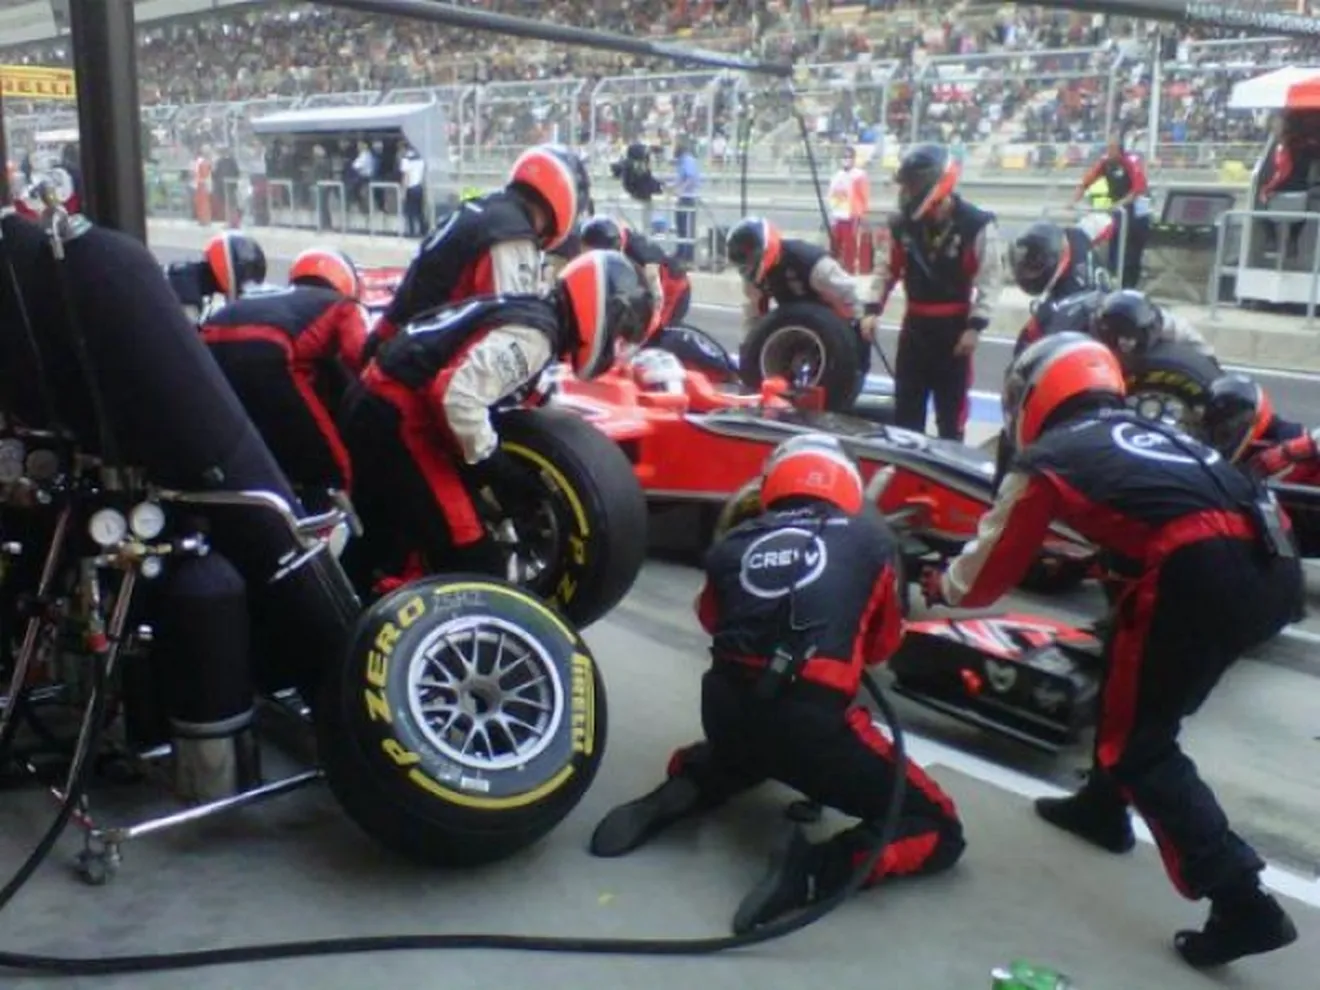  Manor superó los crash tests de la FIA